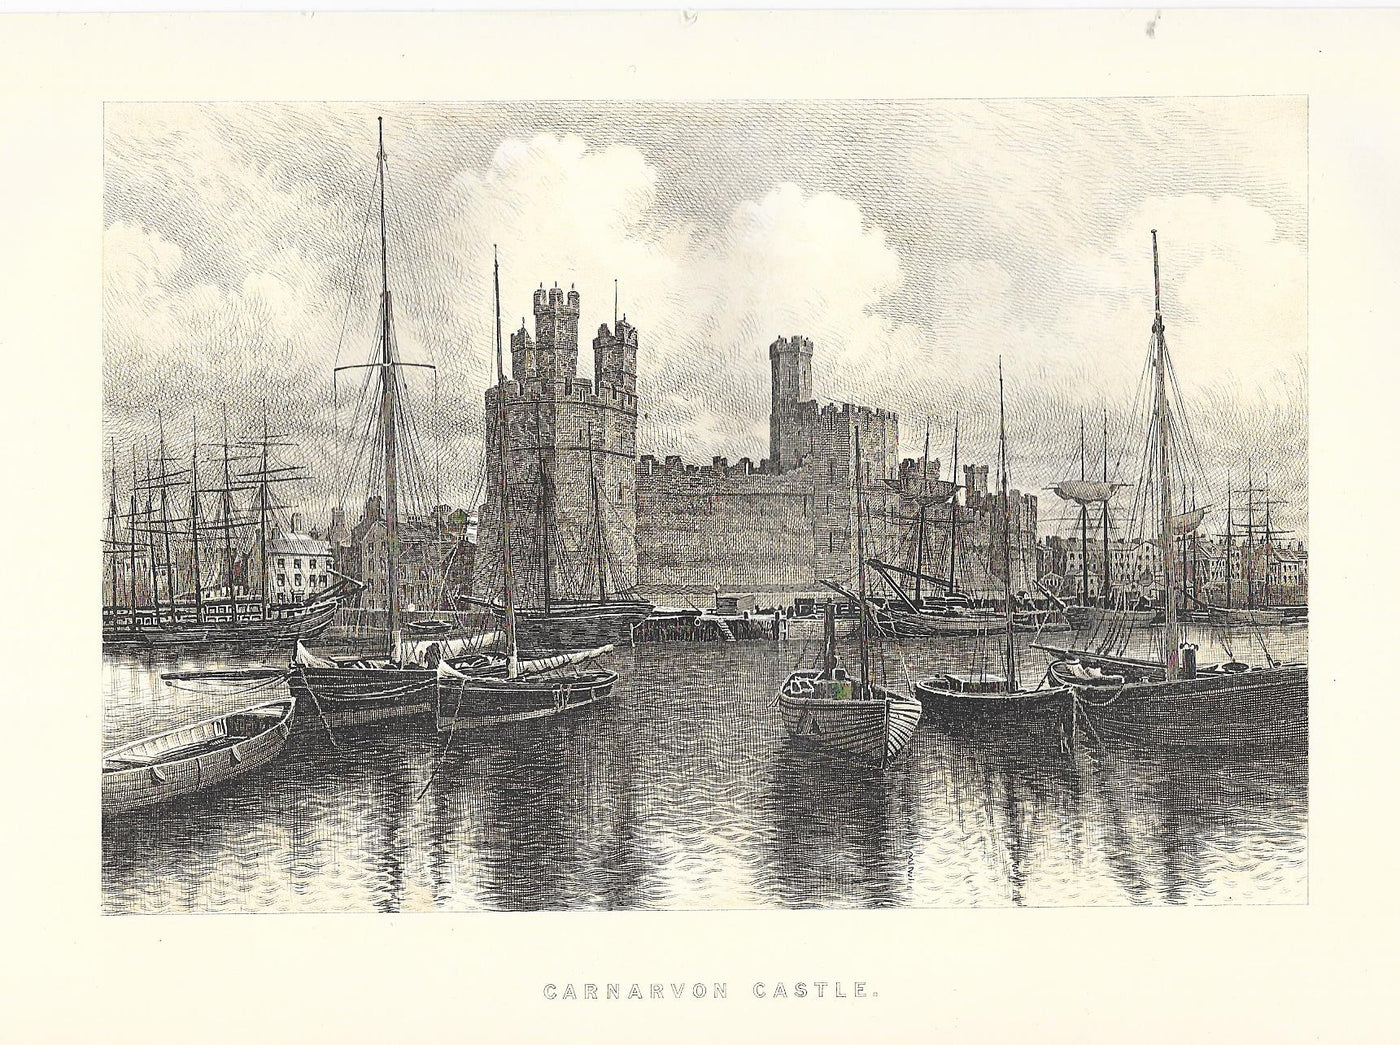 Carnarvon Caernarvon Caernarfon Castle antique print